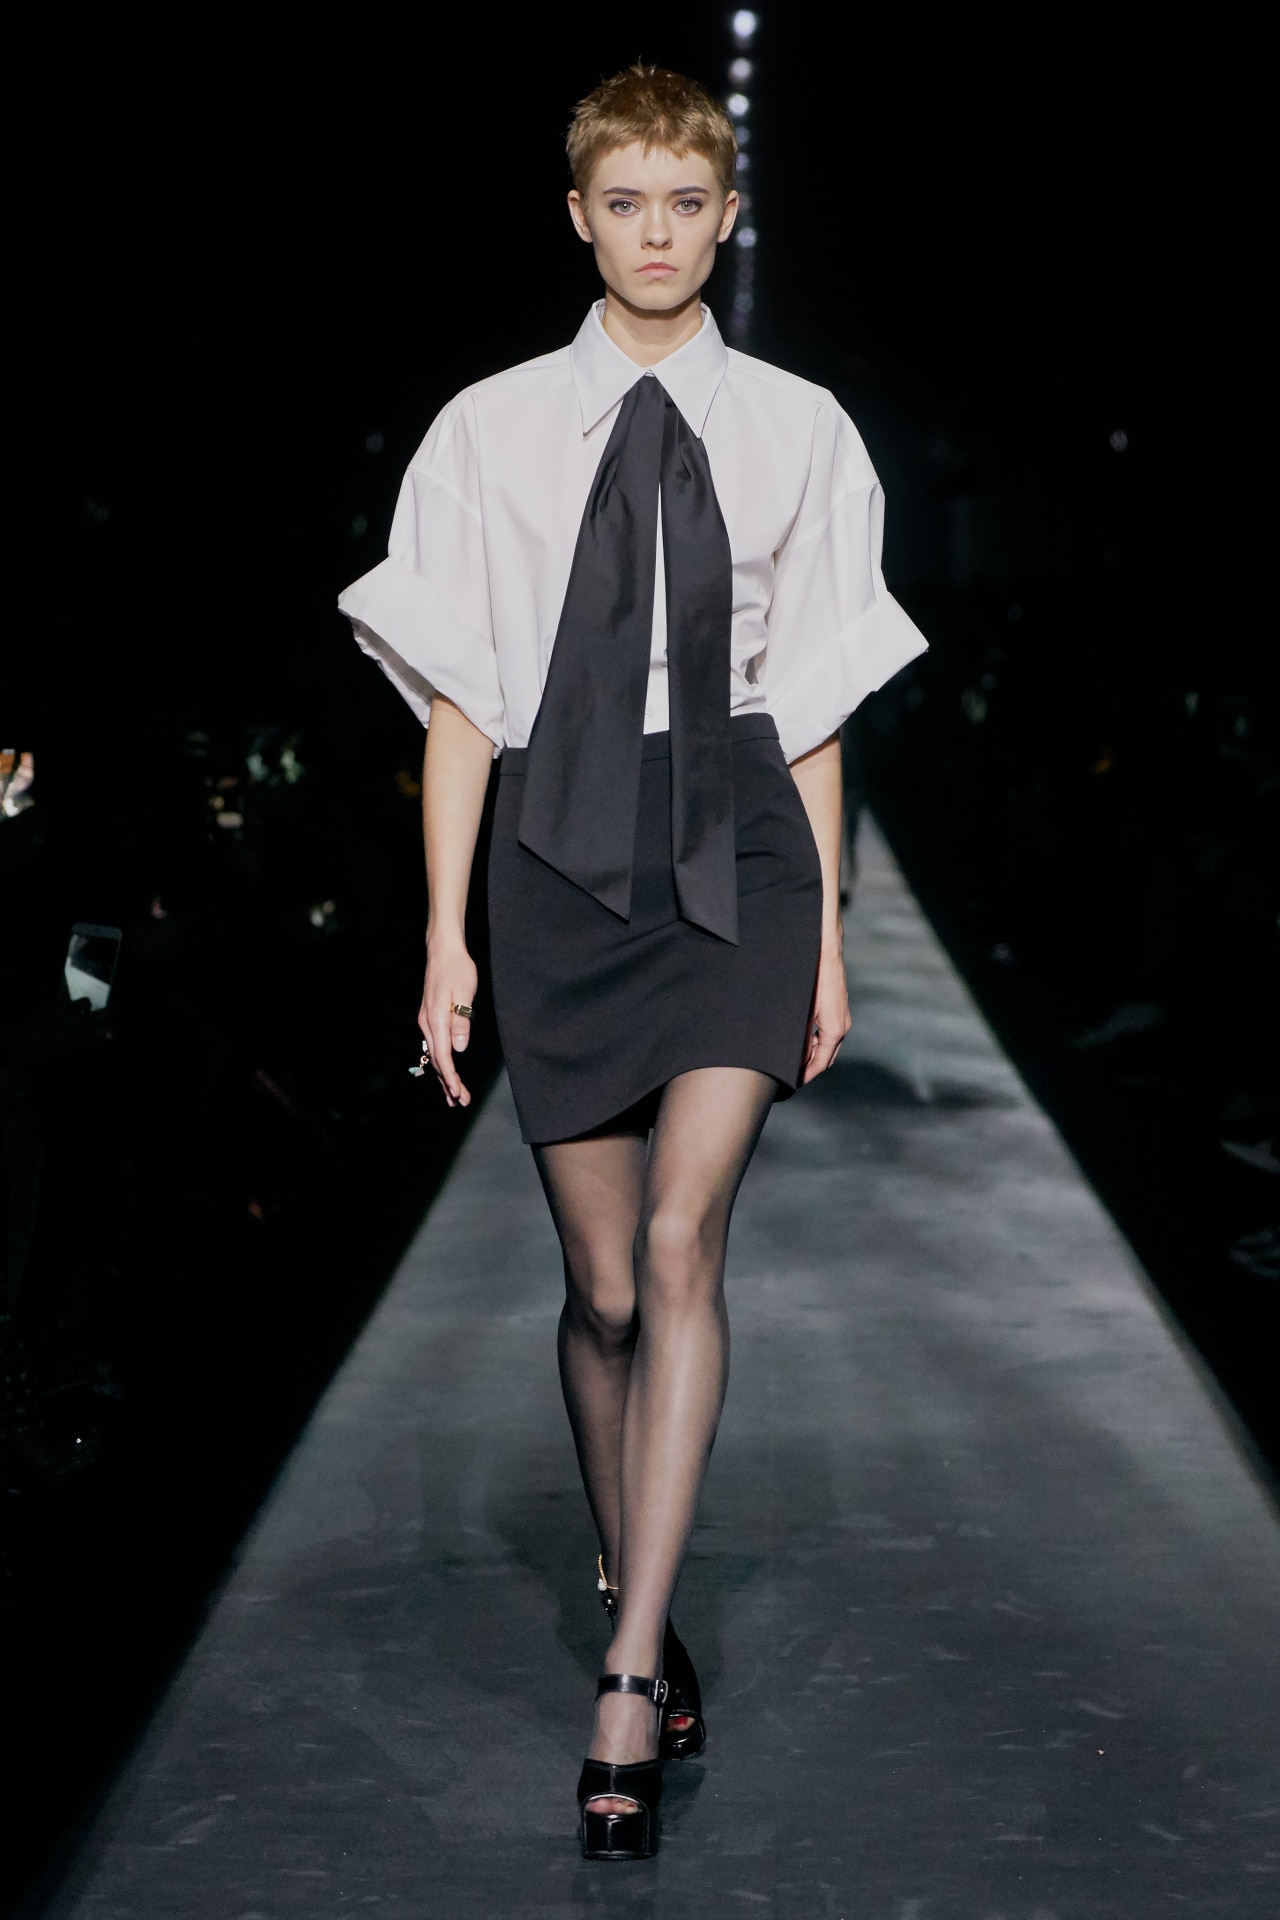 Suzy Menkes at Vogue Week Australia ready-to-wear \'19\'20 - autumn/winter Paris Fashion